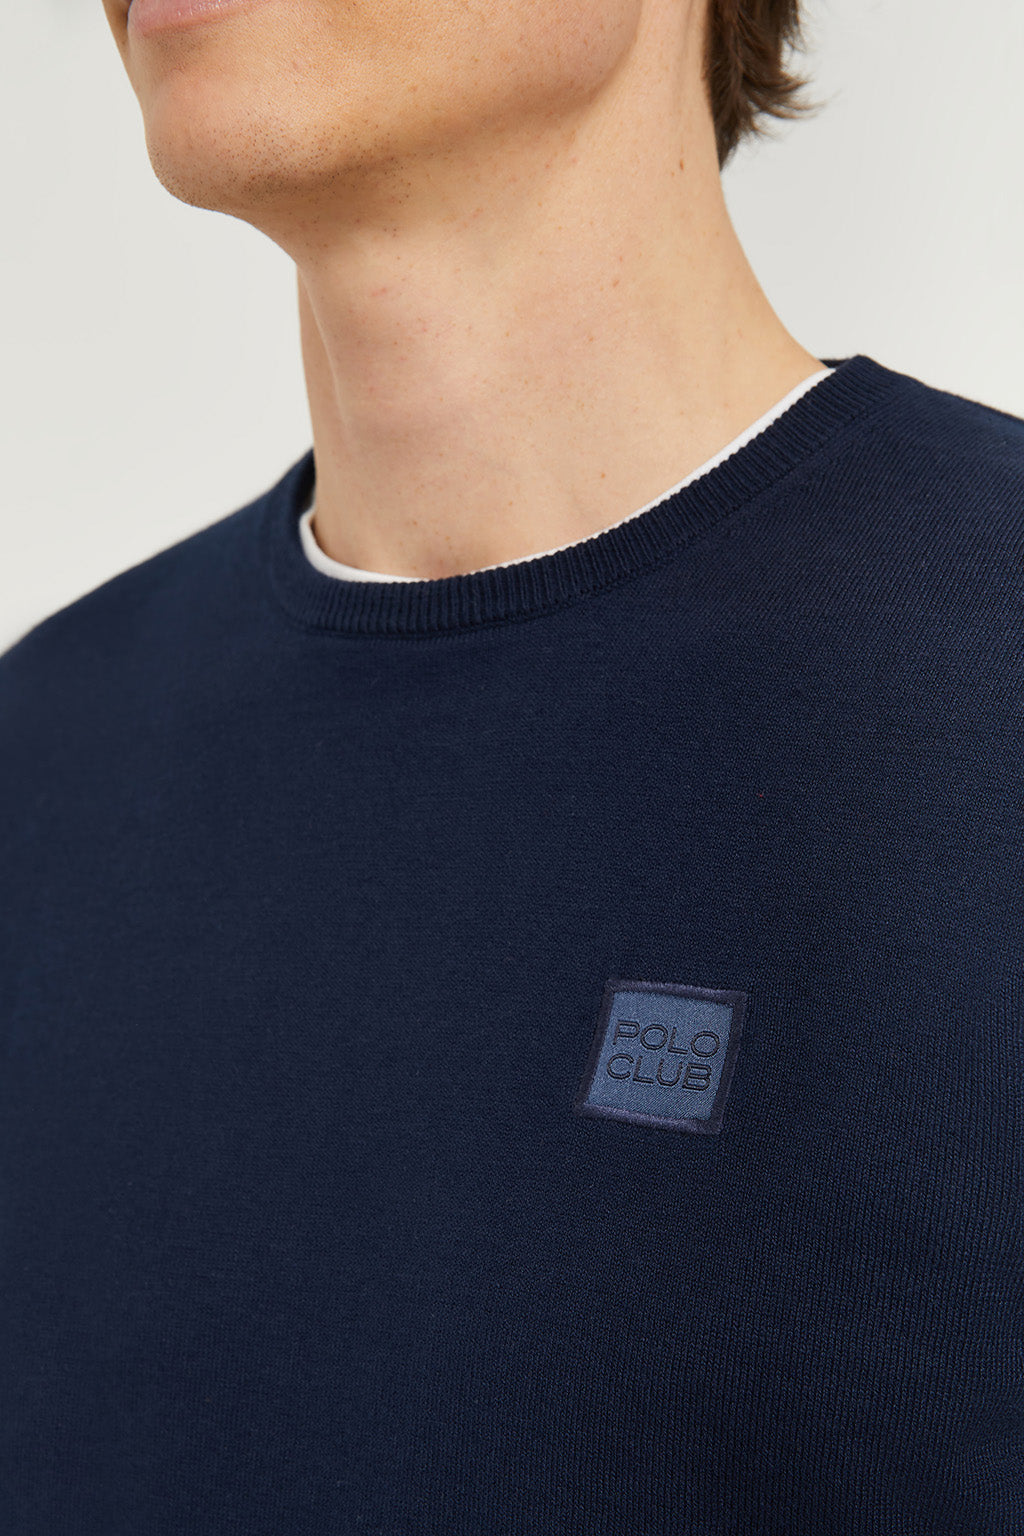 Lacoste - Pull ras de cou avec logo - Bleu marine